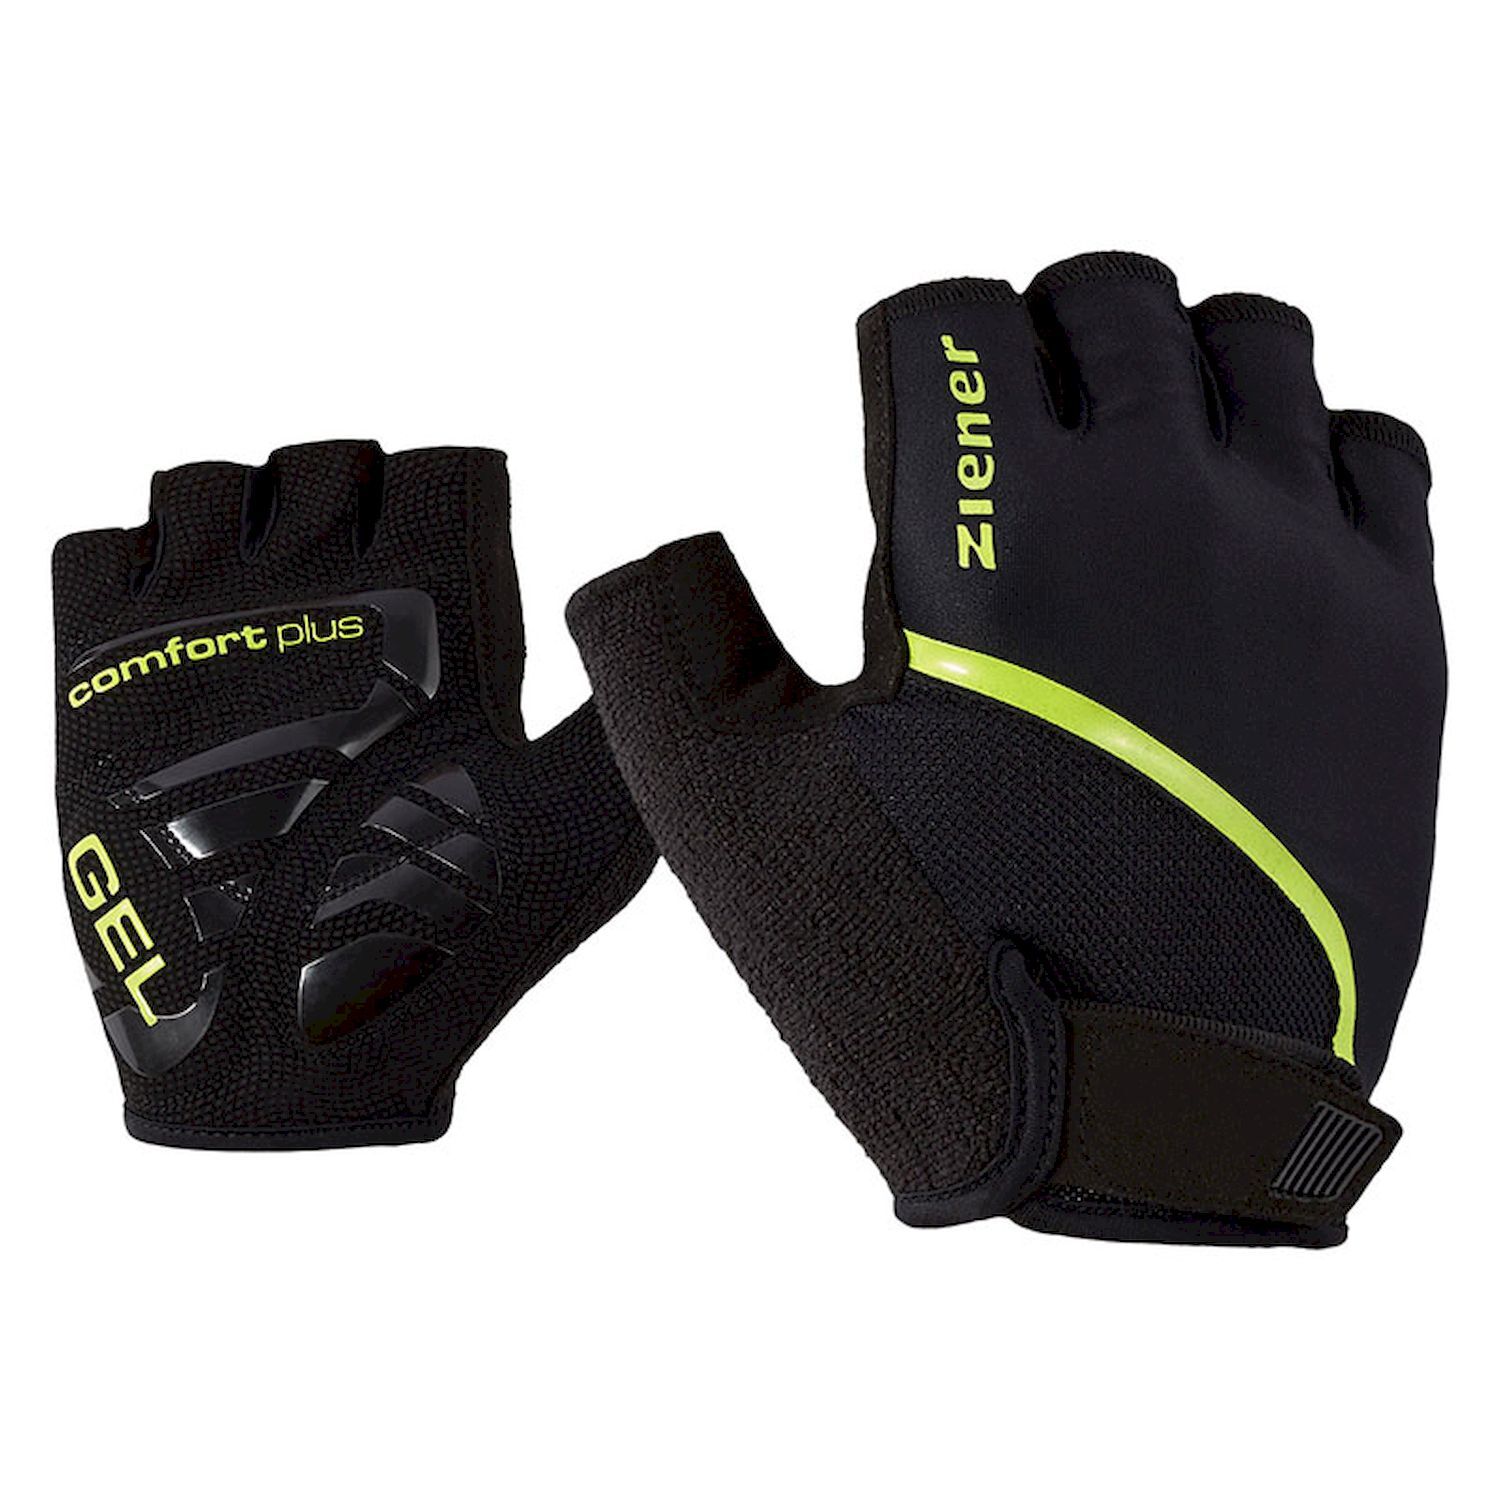 Ziener Celal - Cycling gloves - Men's